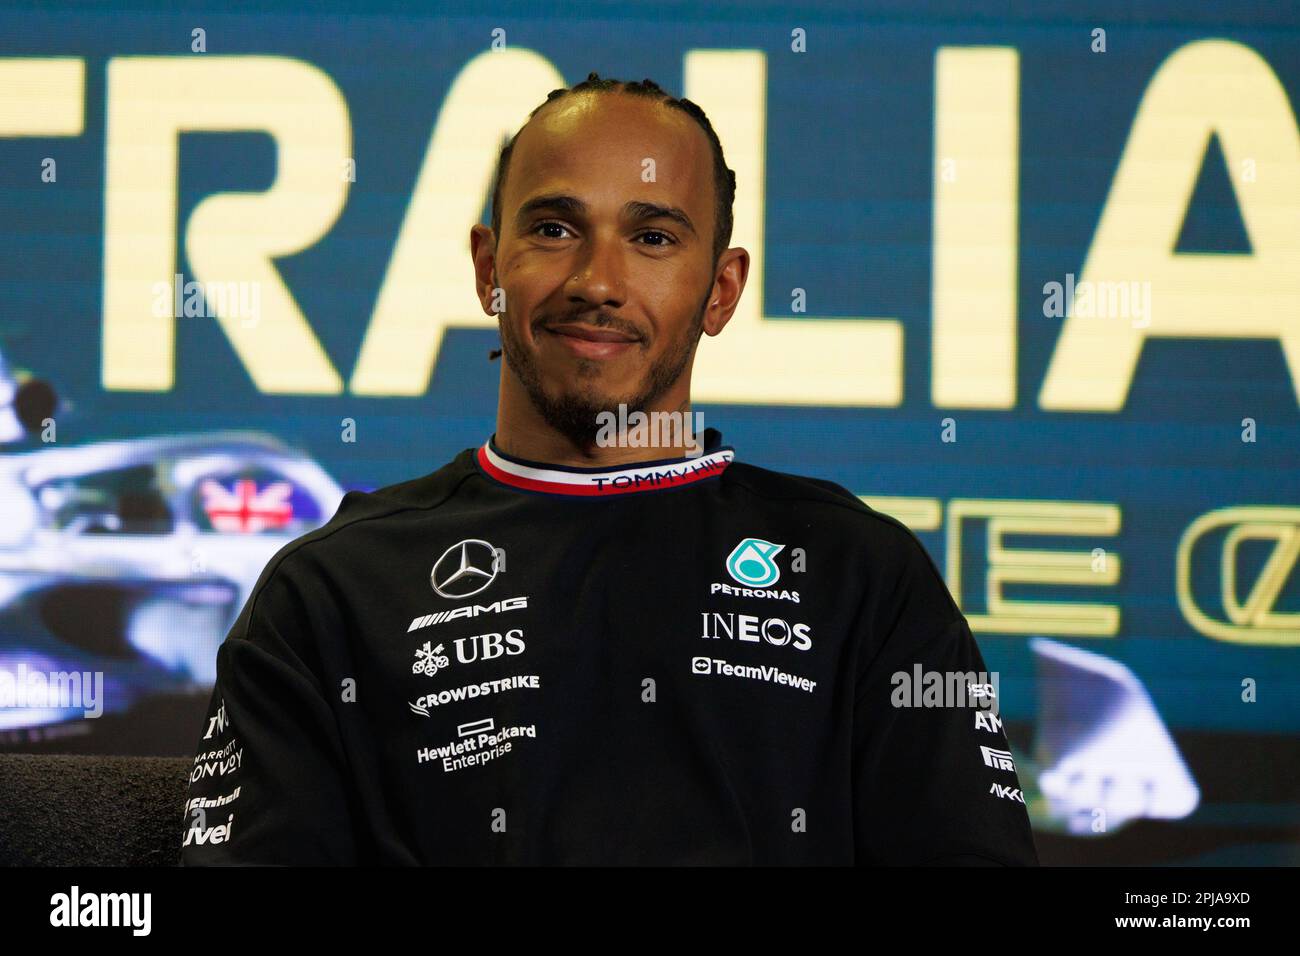 Albert Park, 1. April 2023 Lewis Hamilton (GBR) des Teams Mercedes während einer Presserei. Corleve/Alamy Live News Stockfoto